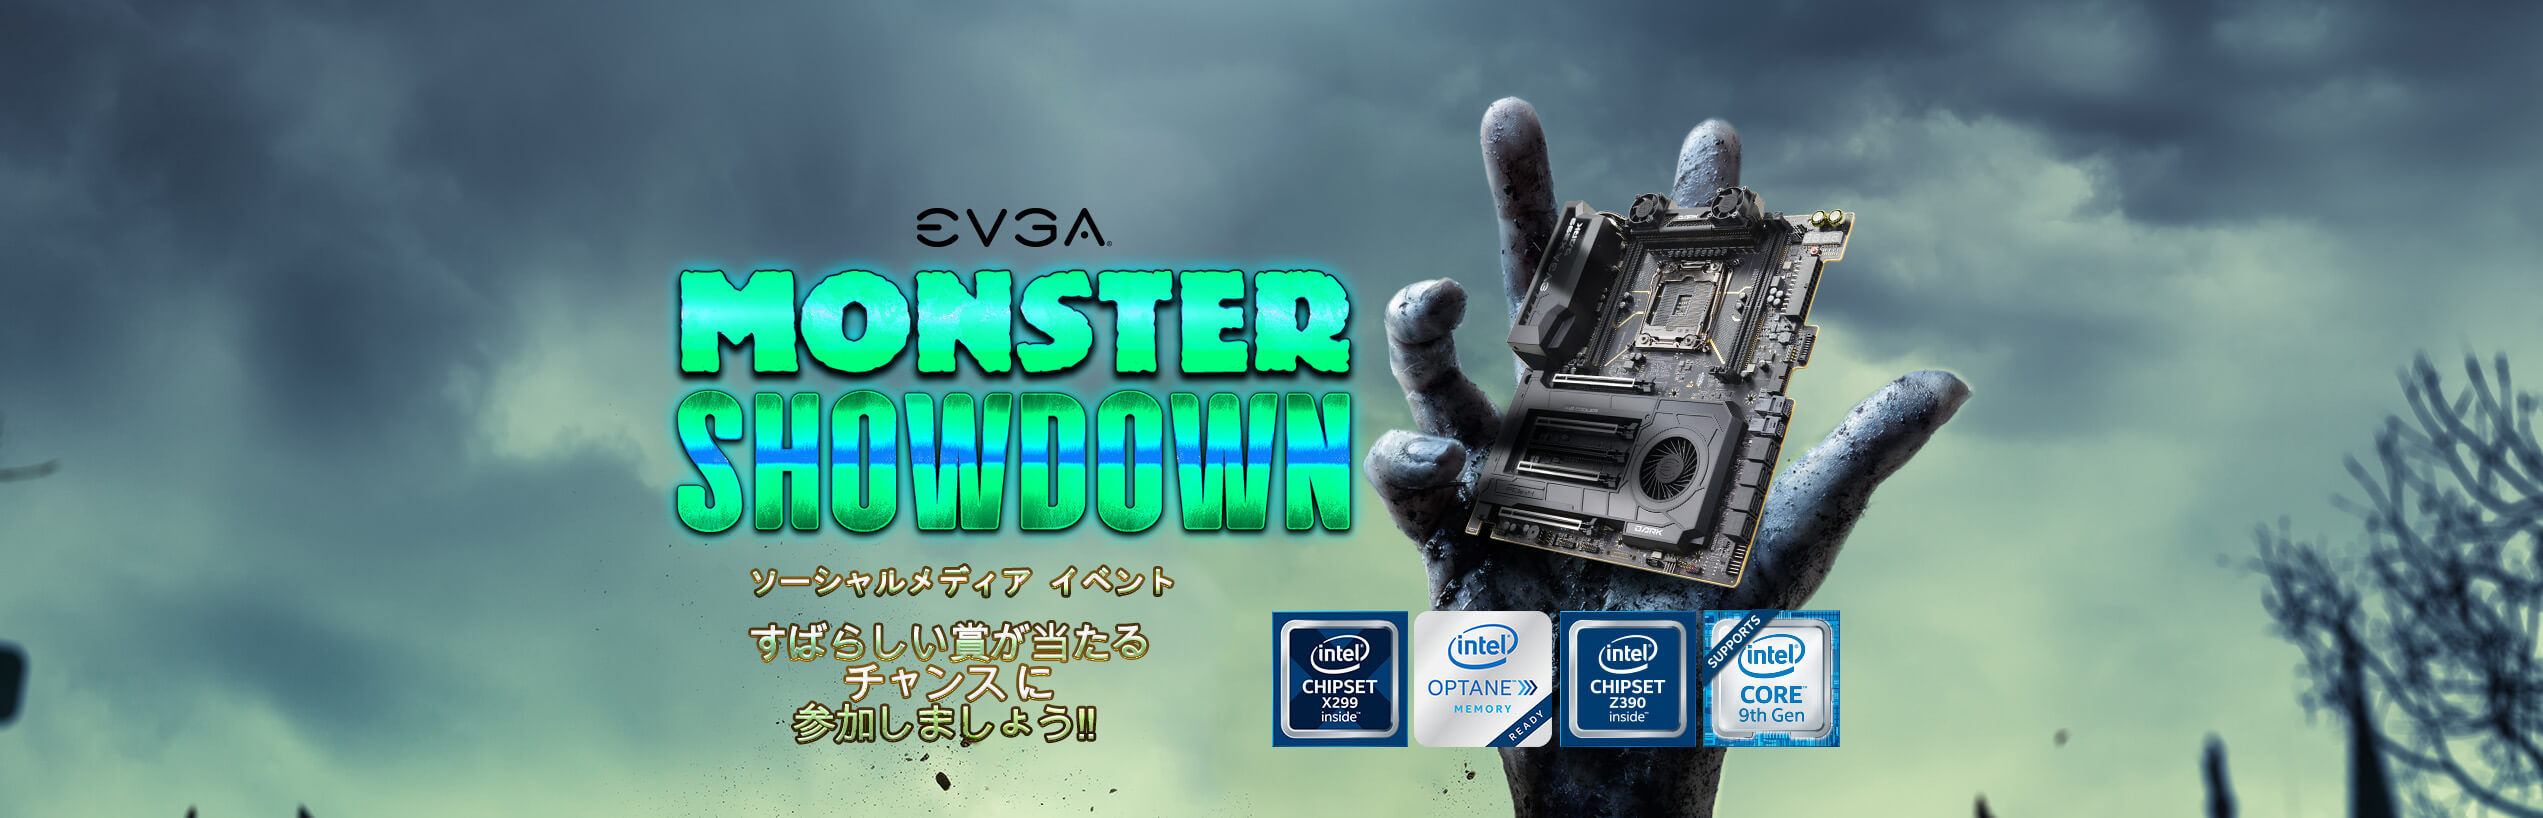 Monster Showdown Social Media Event